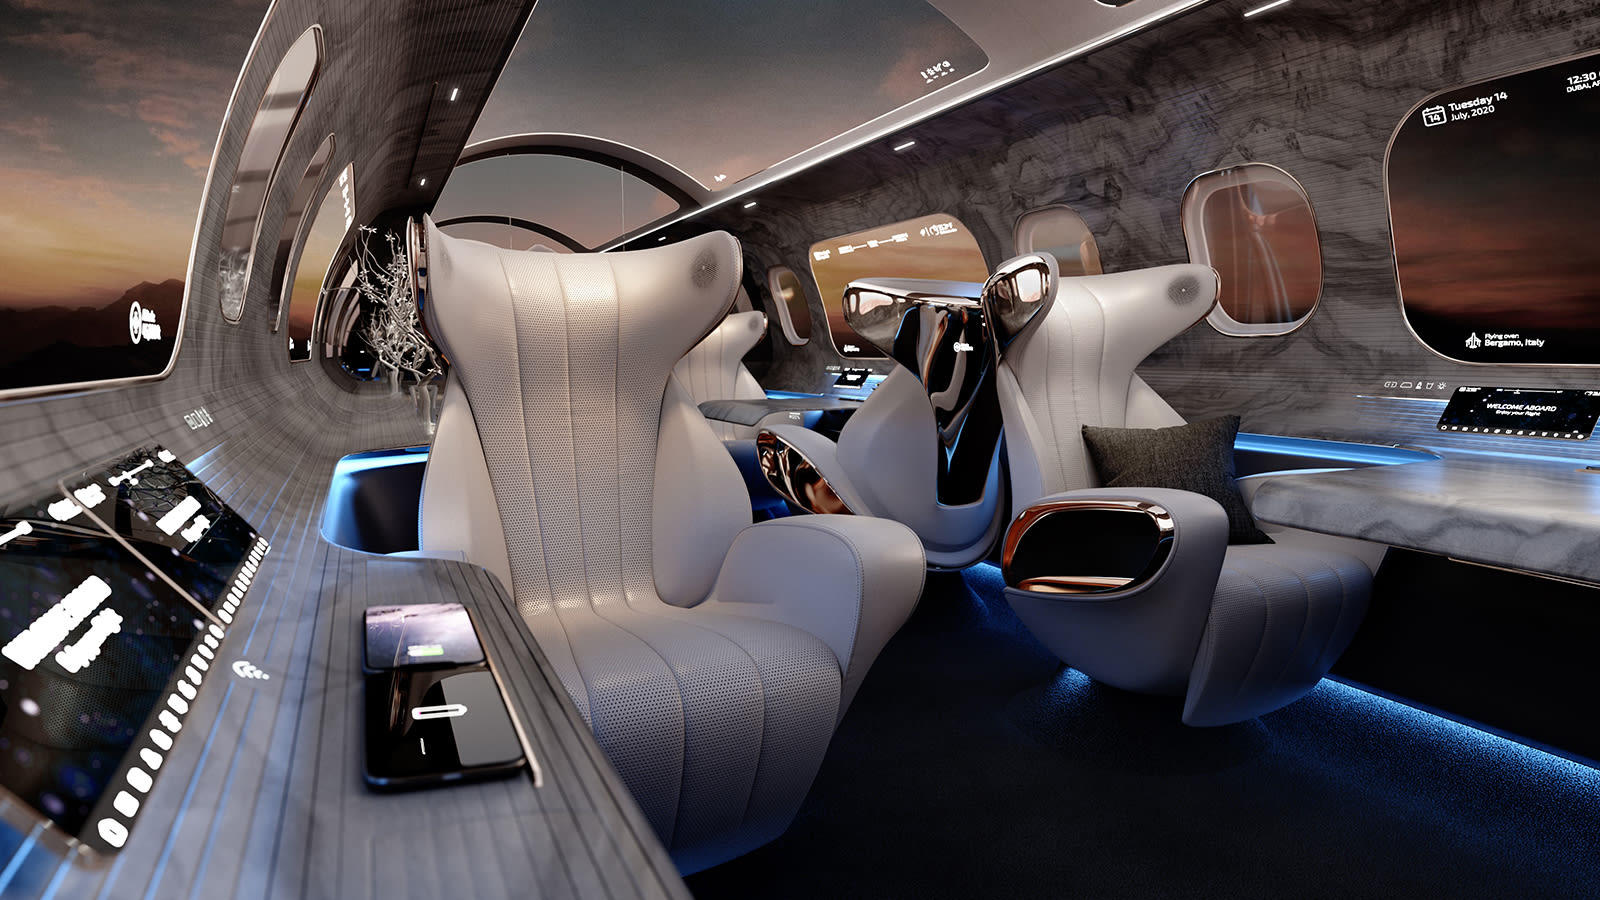 هكذا قد تكون المقاعد.. تصاميم داخلية للطائرات تعطي لمحة عن مستقبل السفر الجوي